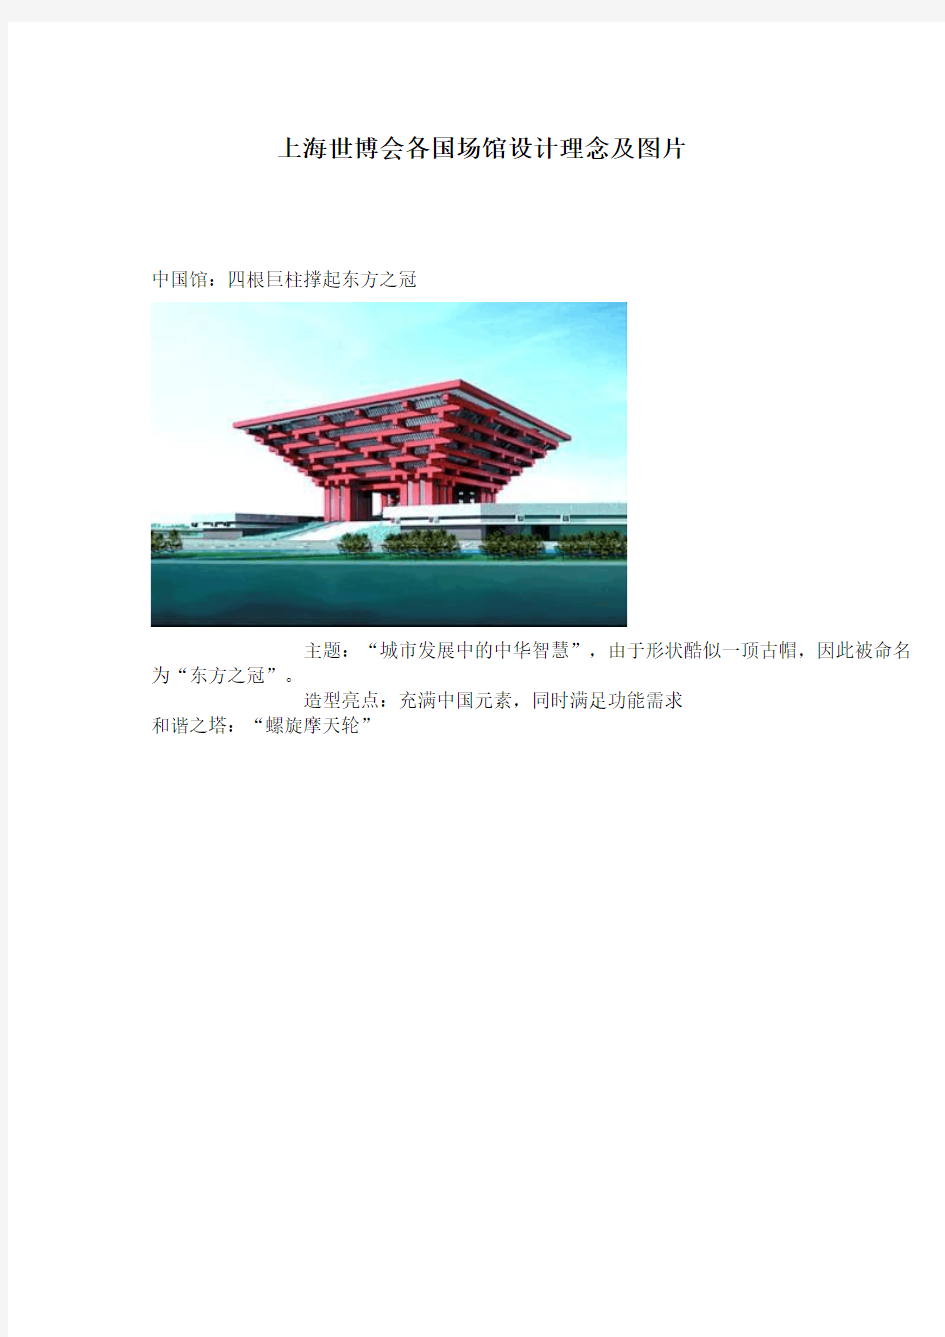 上海世博会各国场馆设计理念及图片